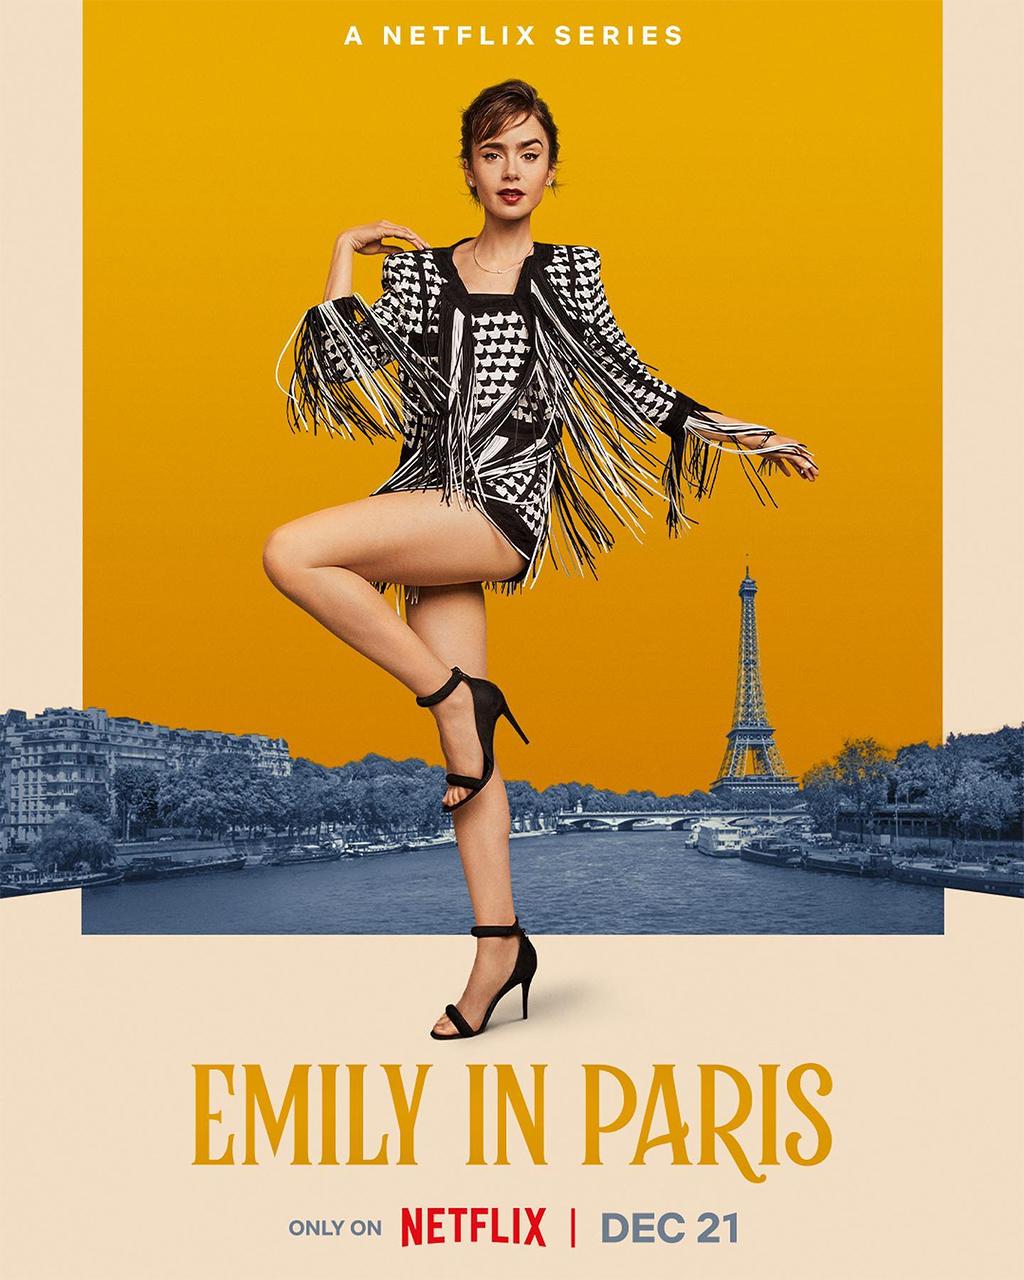 مسلسل - إميلي في باريس - الملصق الرسمي لشخصية إميلي كوبر